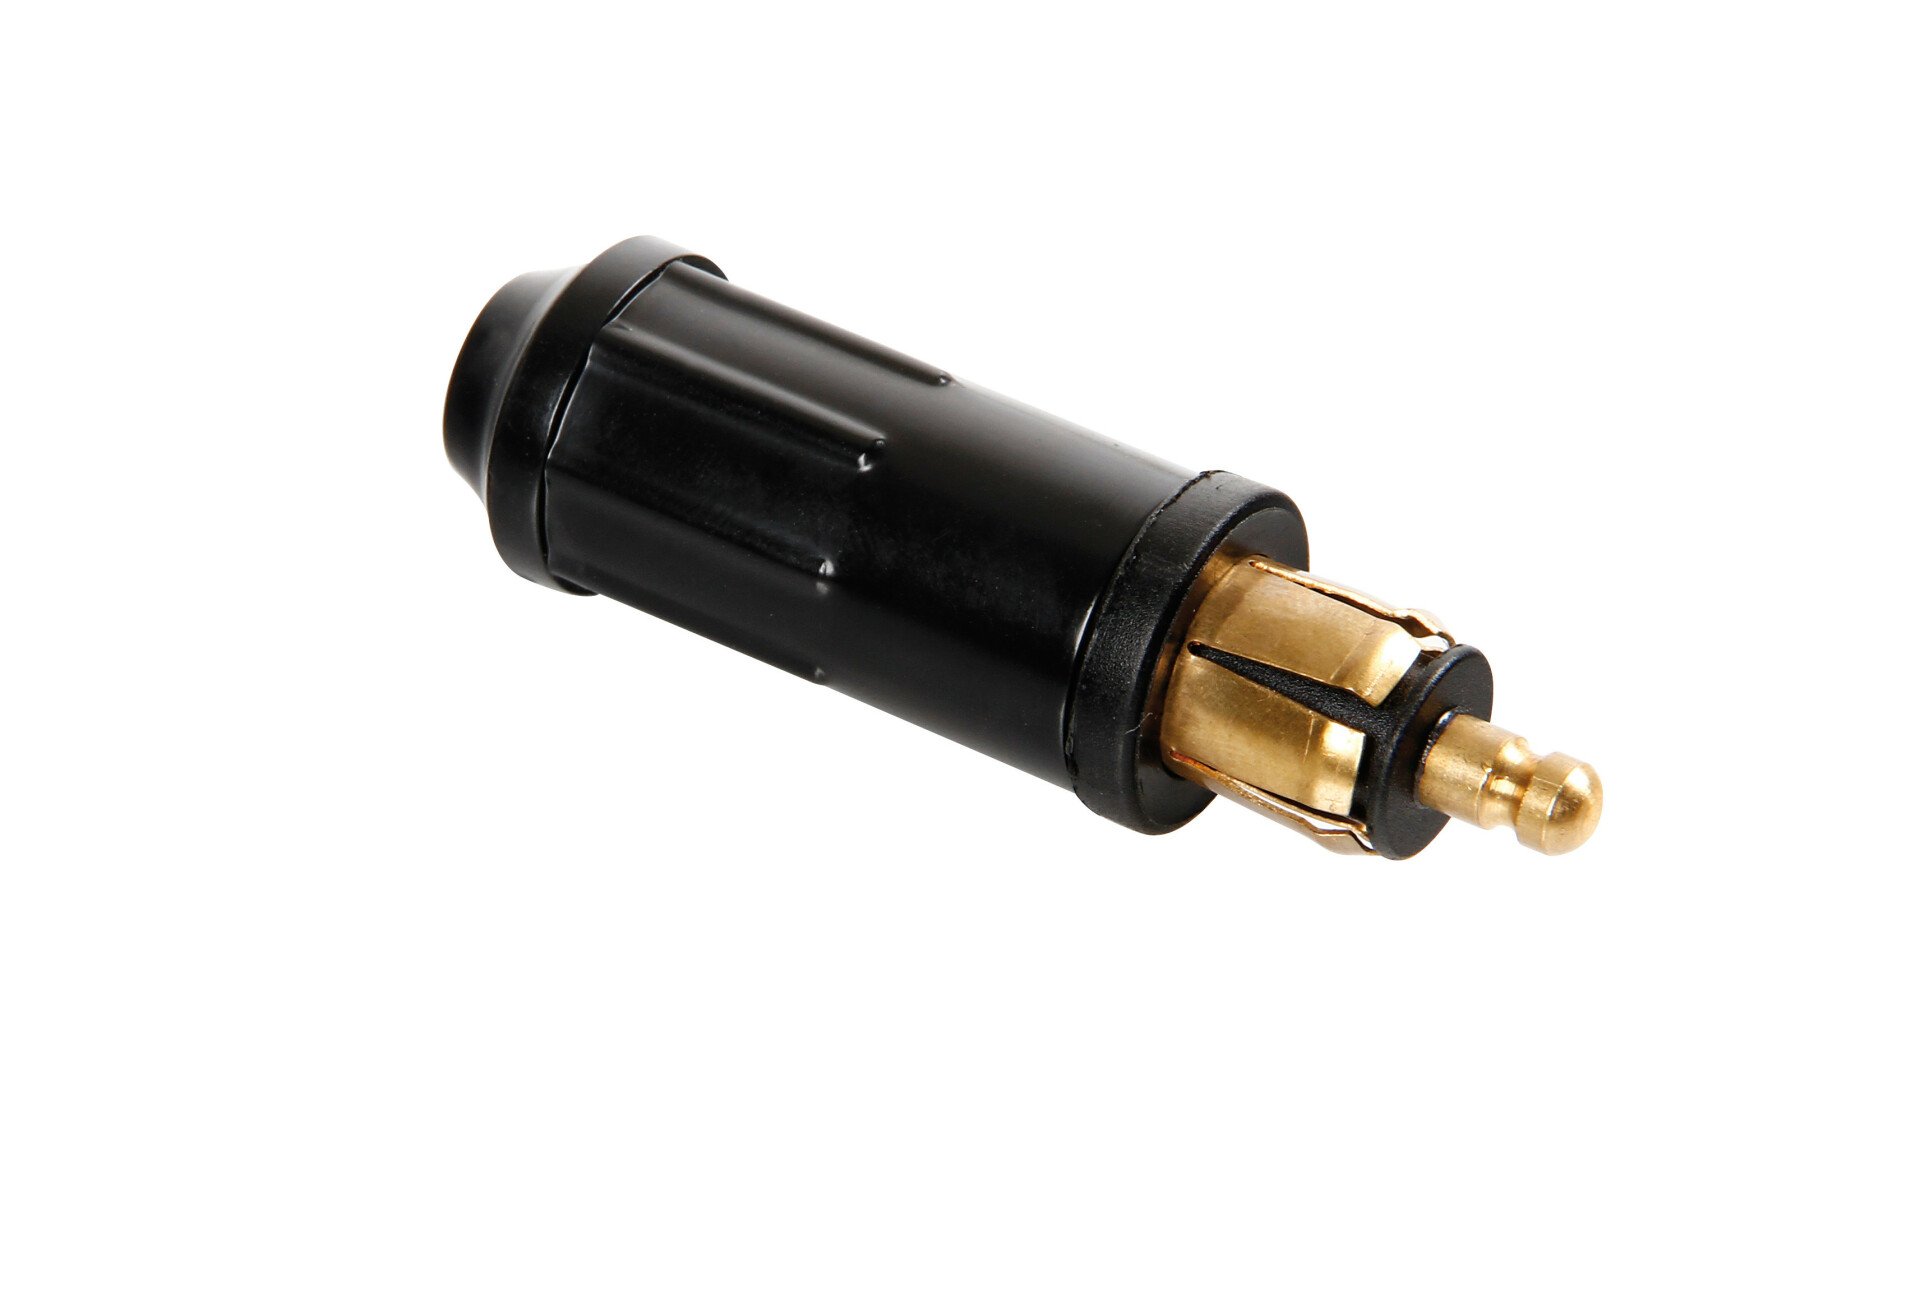 DIN cigarette lighter plug, 12/24V 15A - Resealed thumb